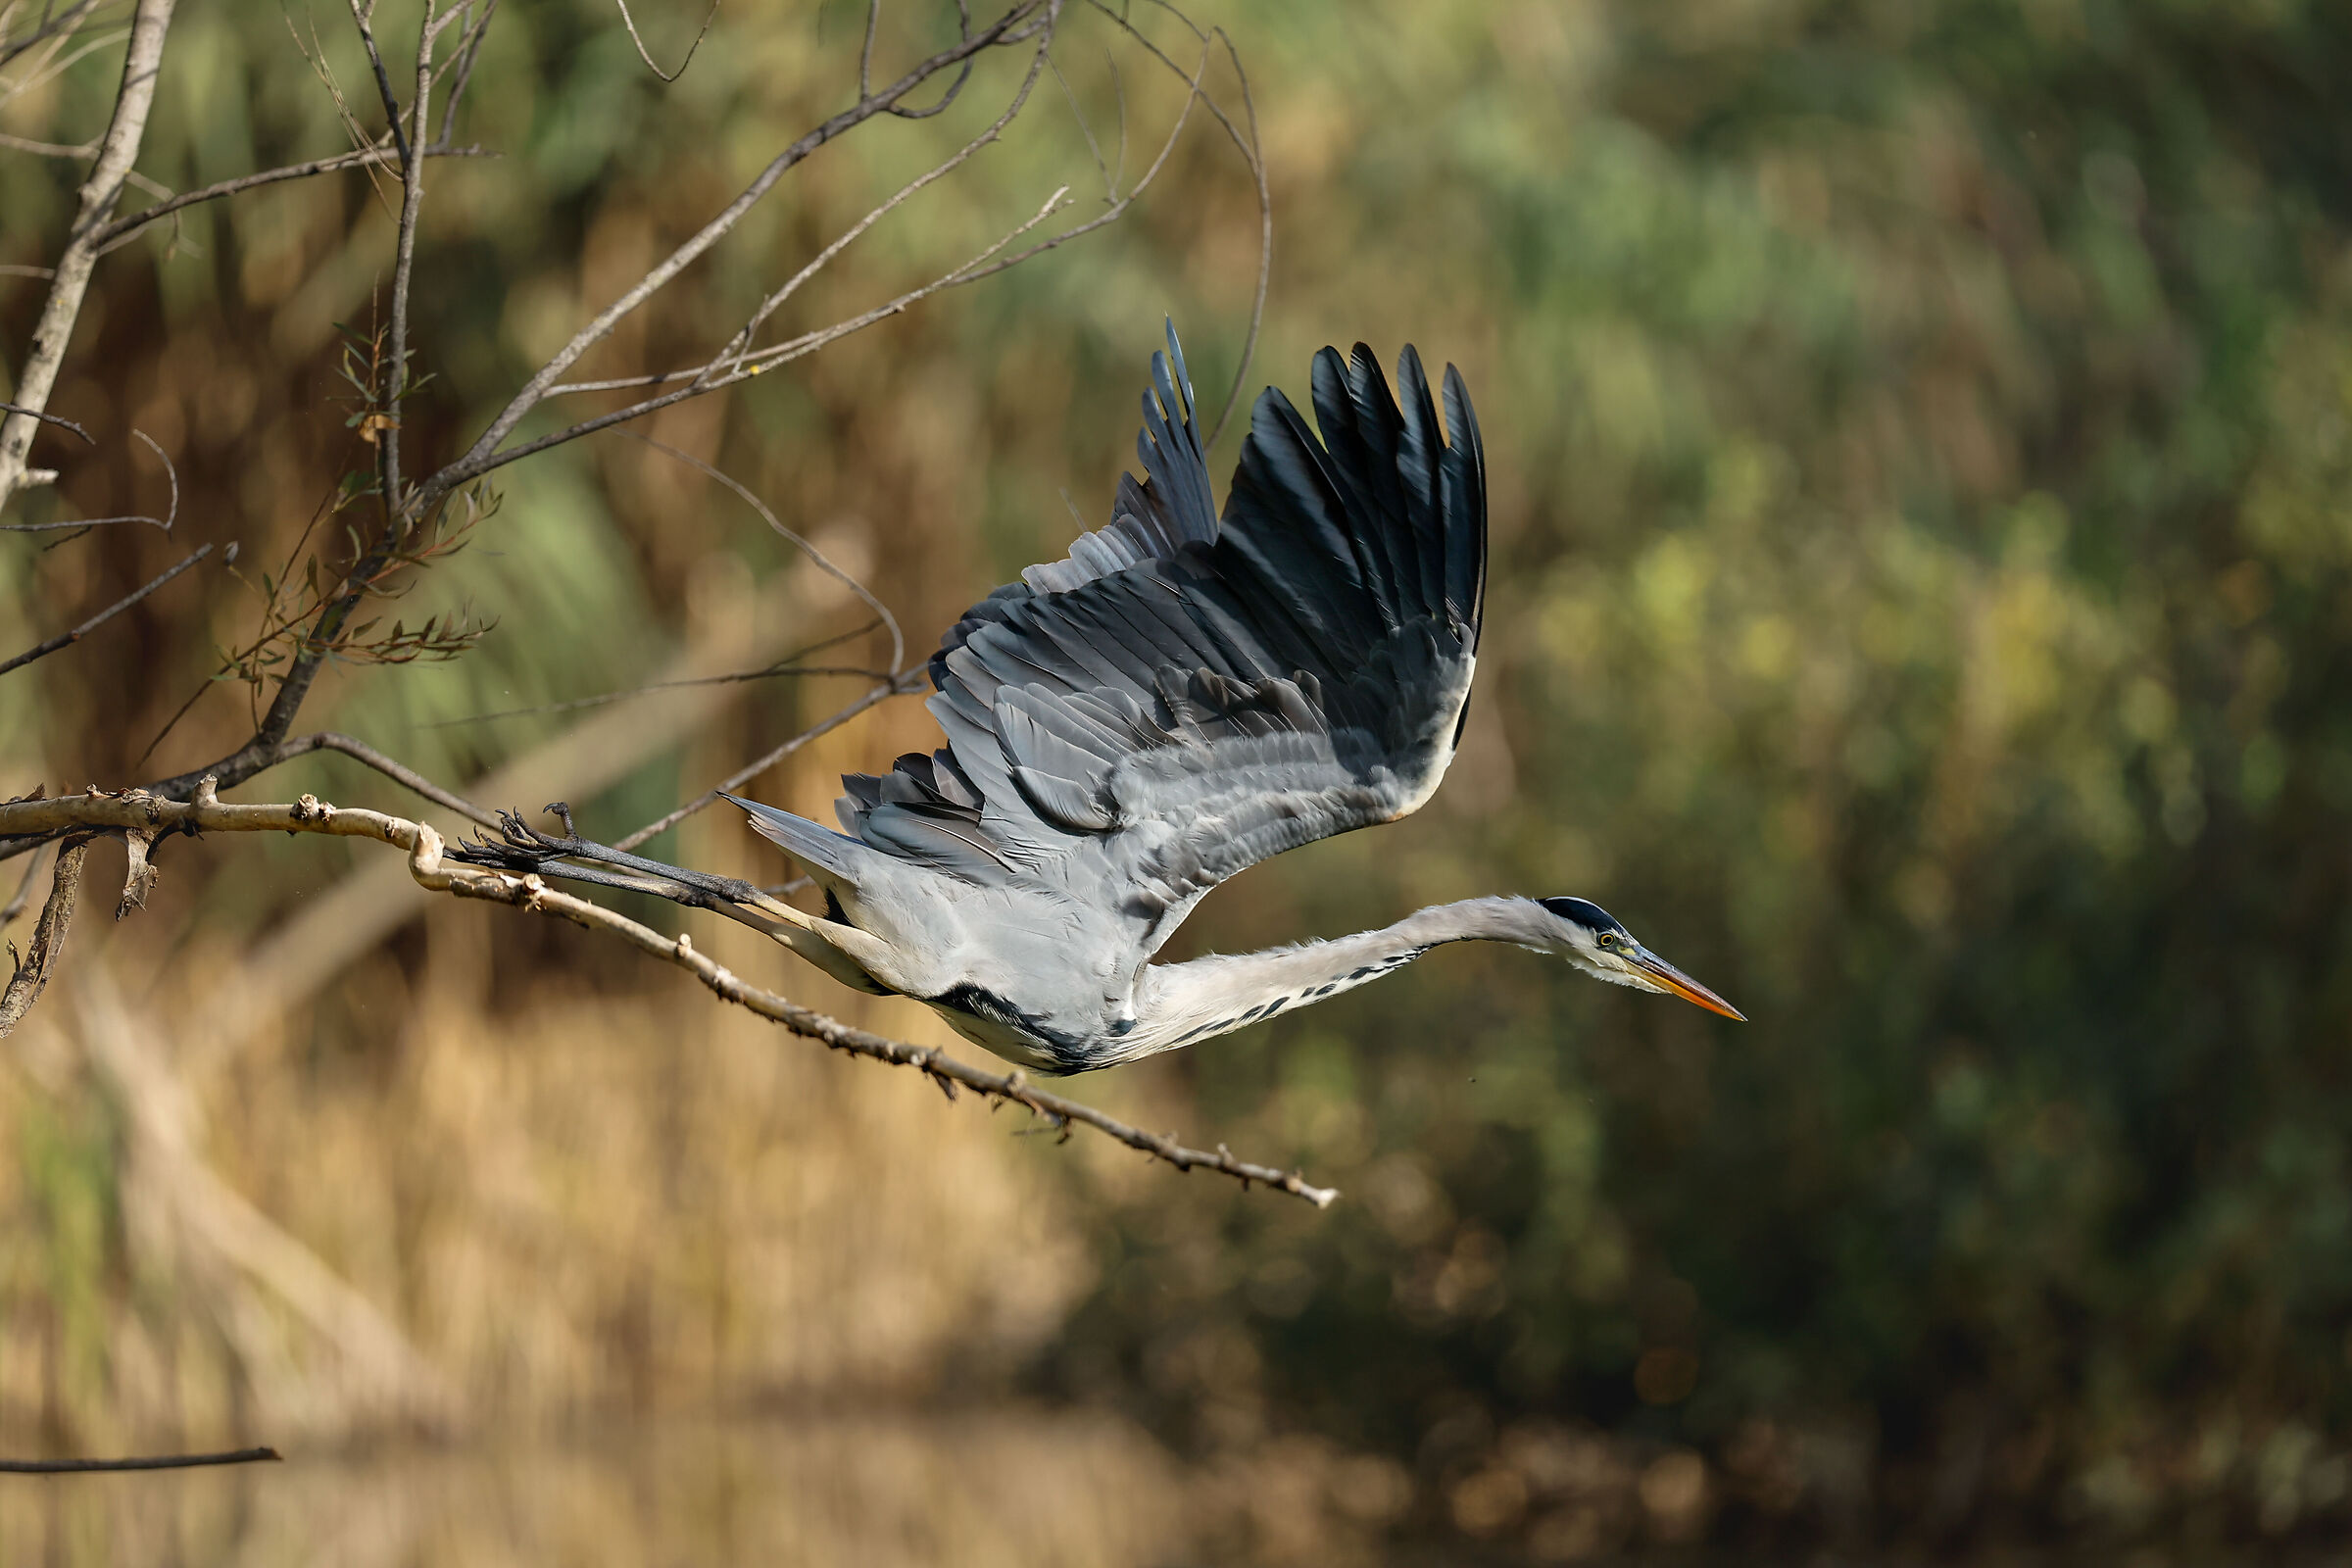 Grey heron on the way...